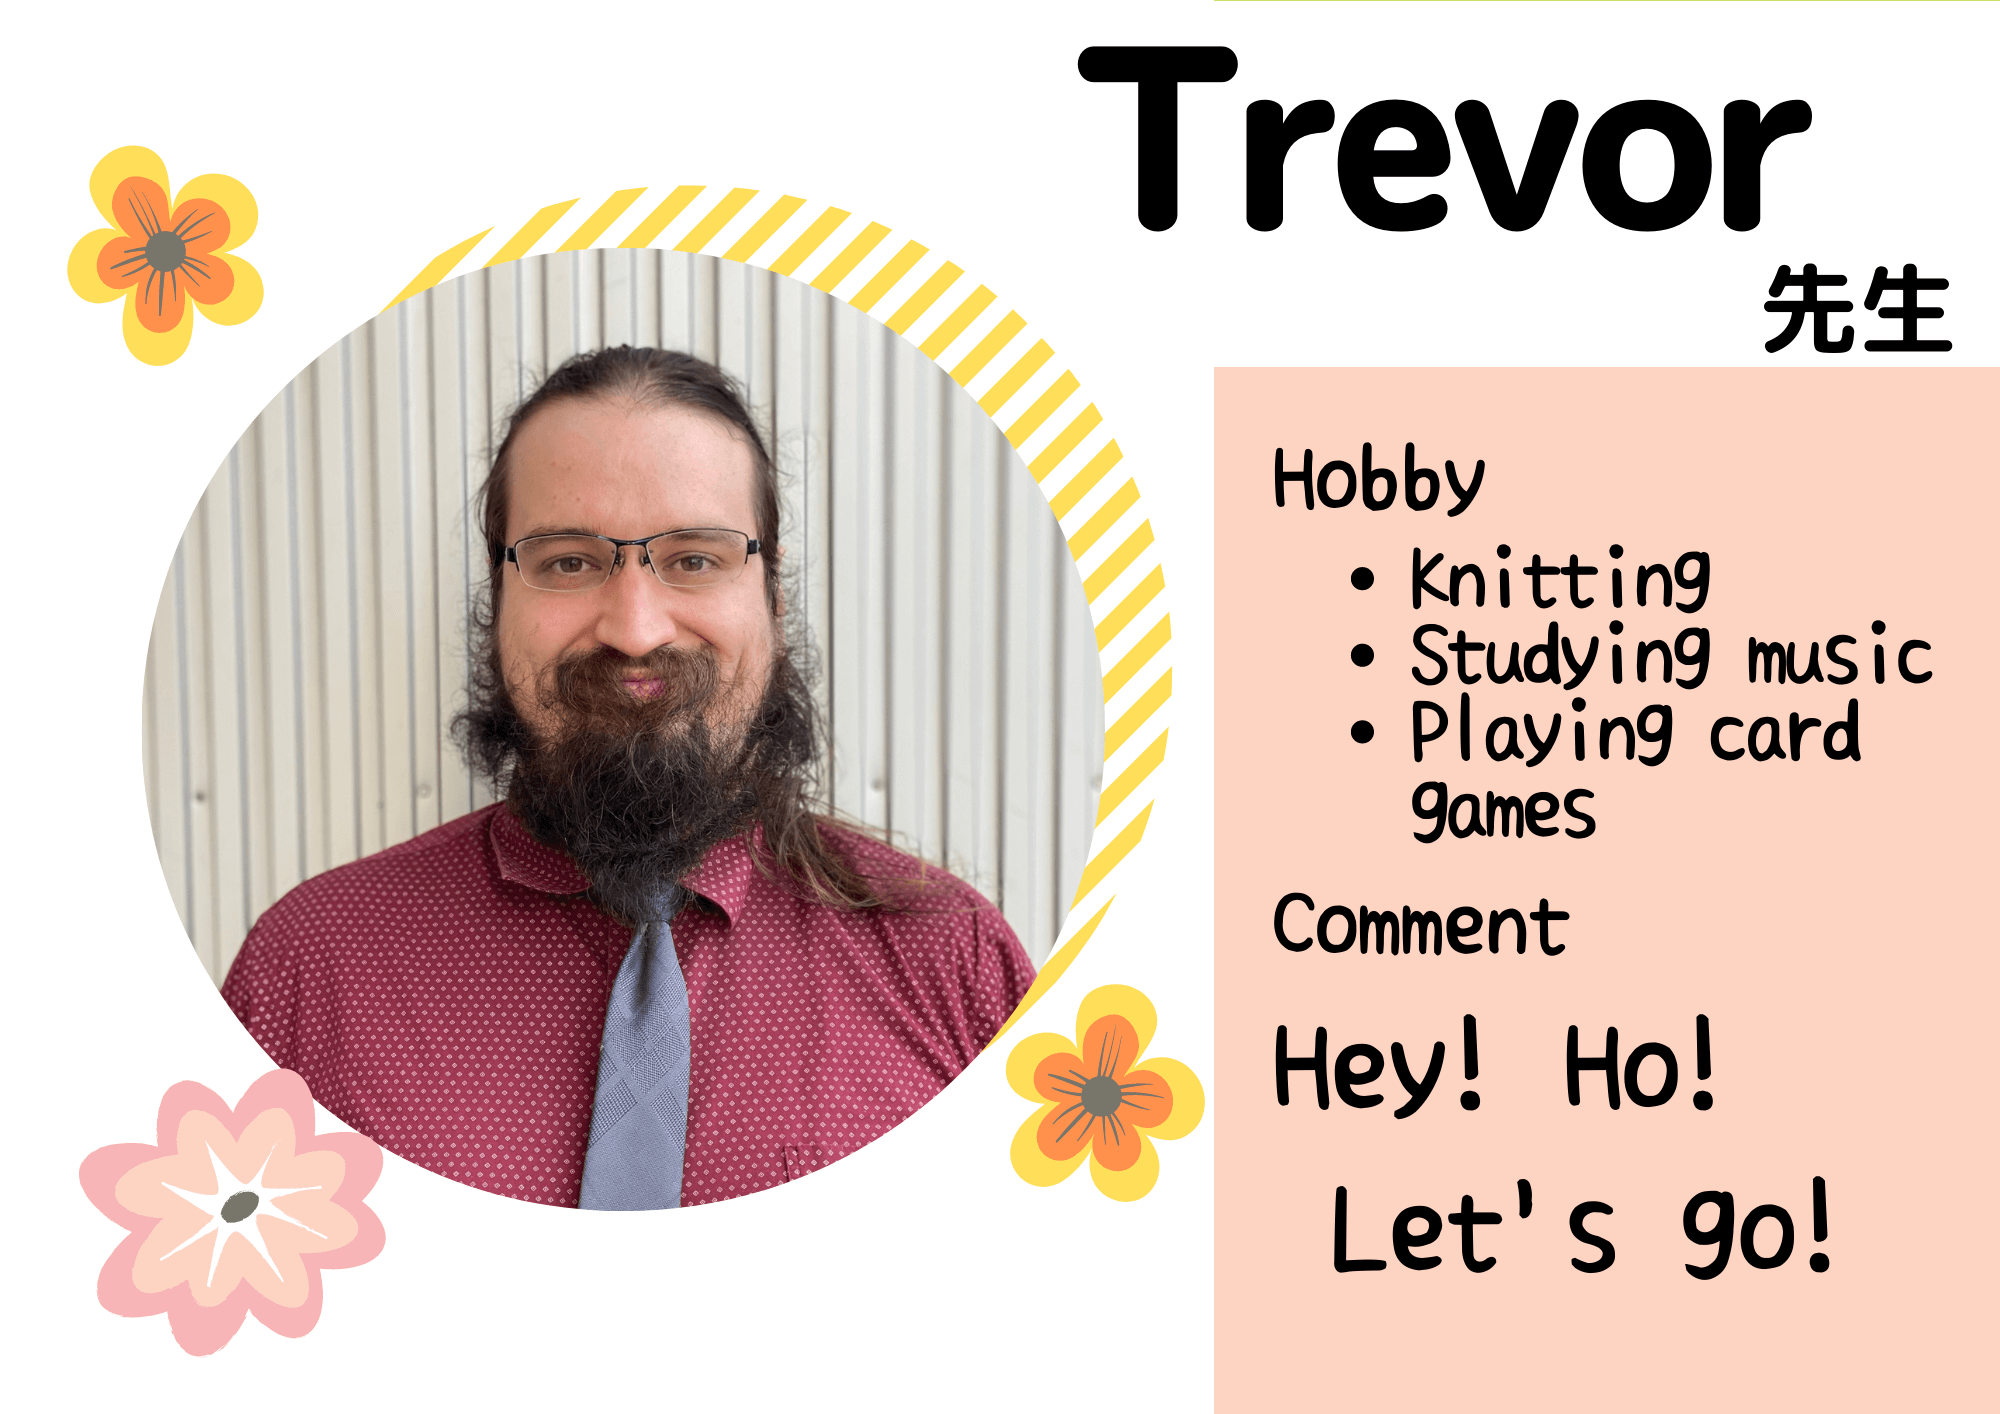 Trevor先生